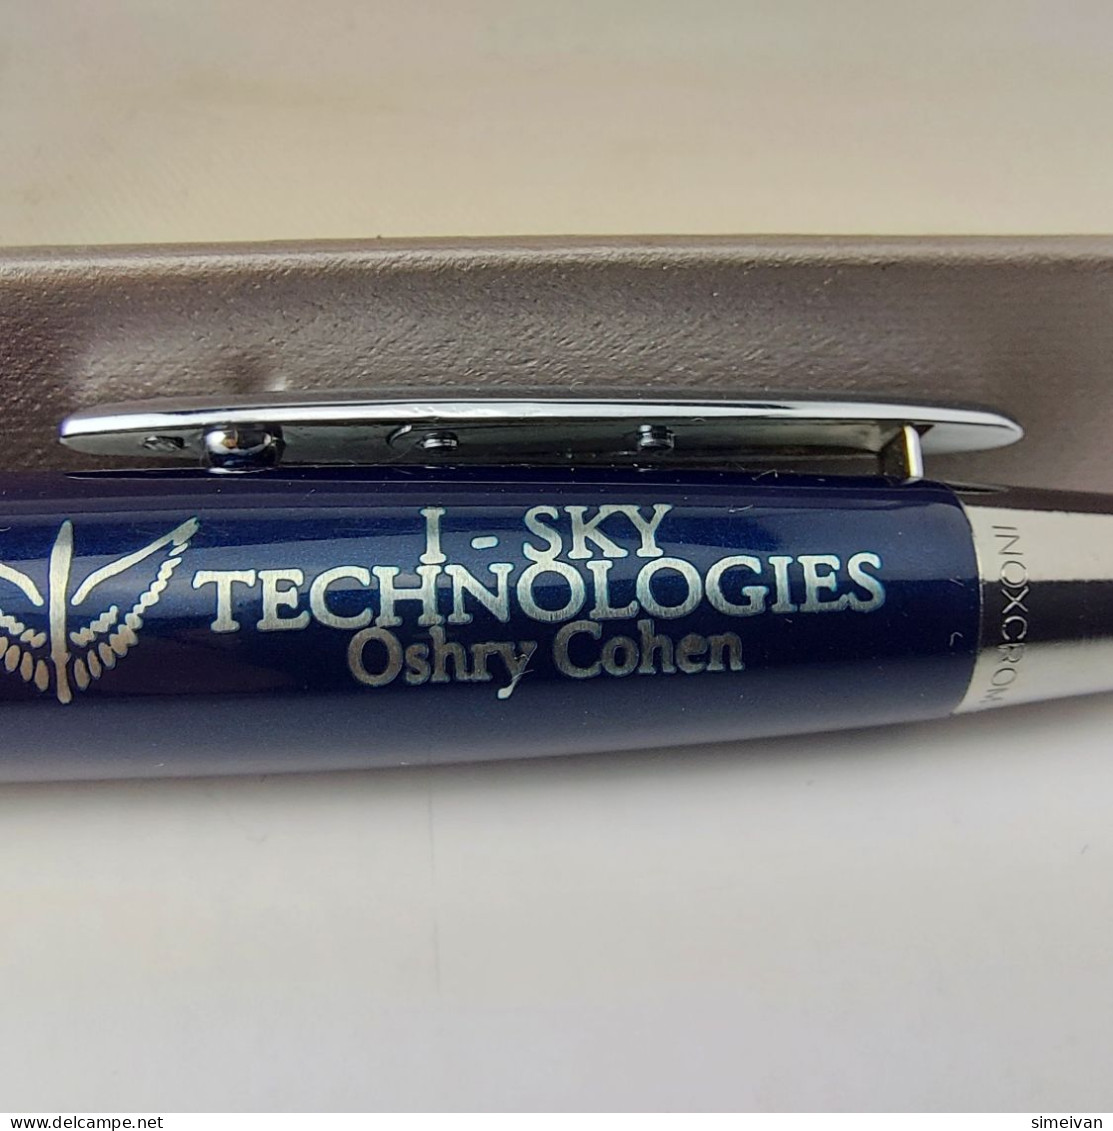 INOXCROM Zeppelin Dark Blue Lacquer Chrome Trim Ballpoin Pen Made In Spain #5434 - Pens